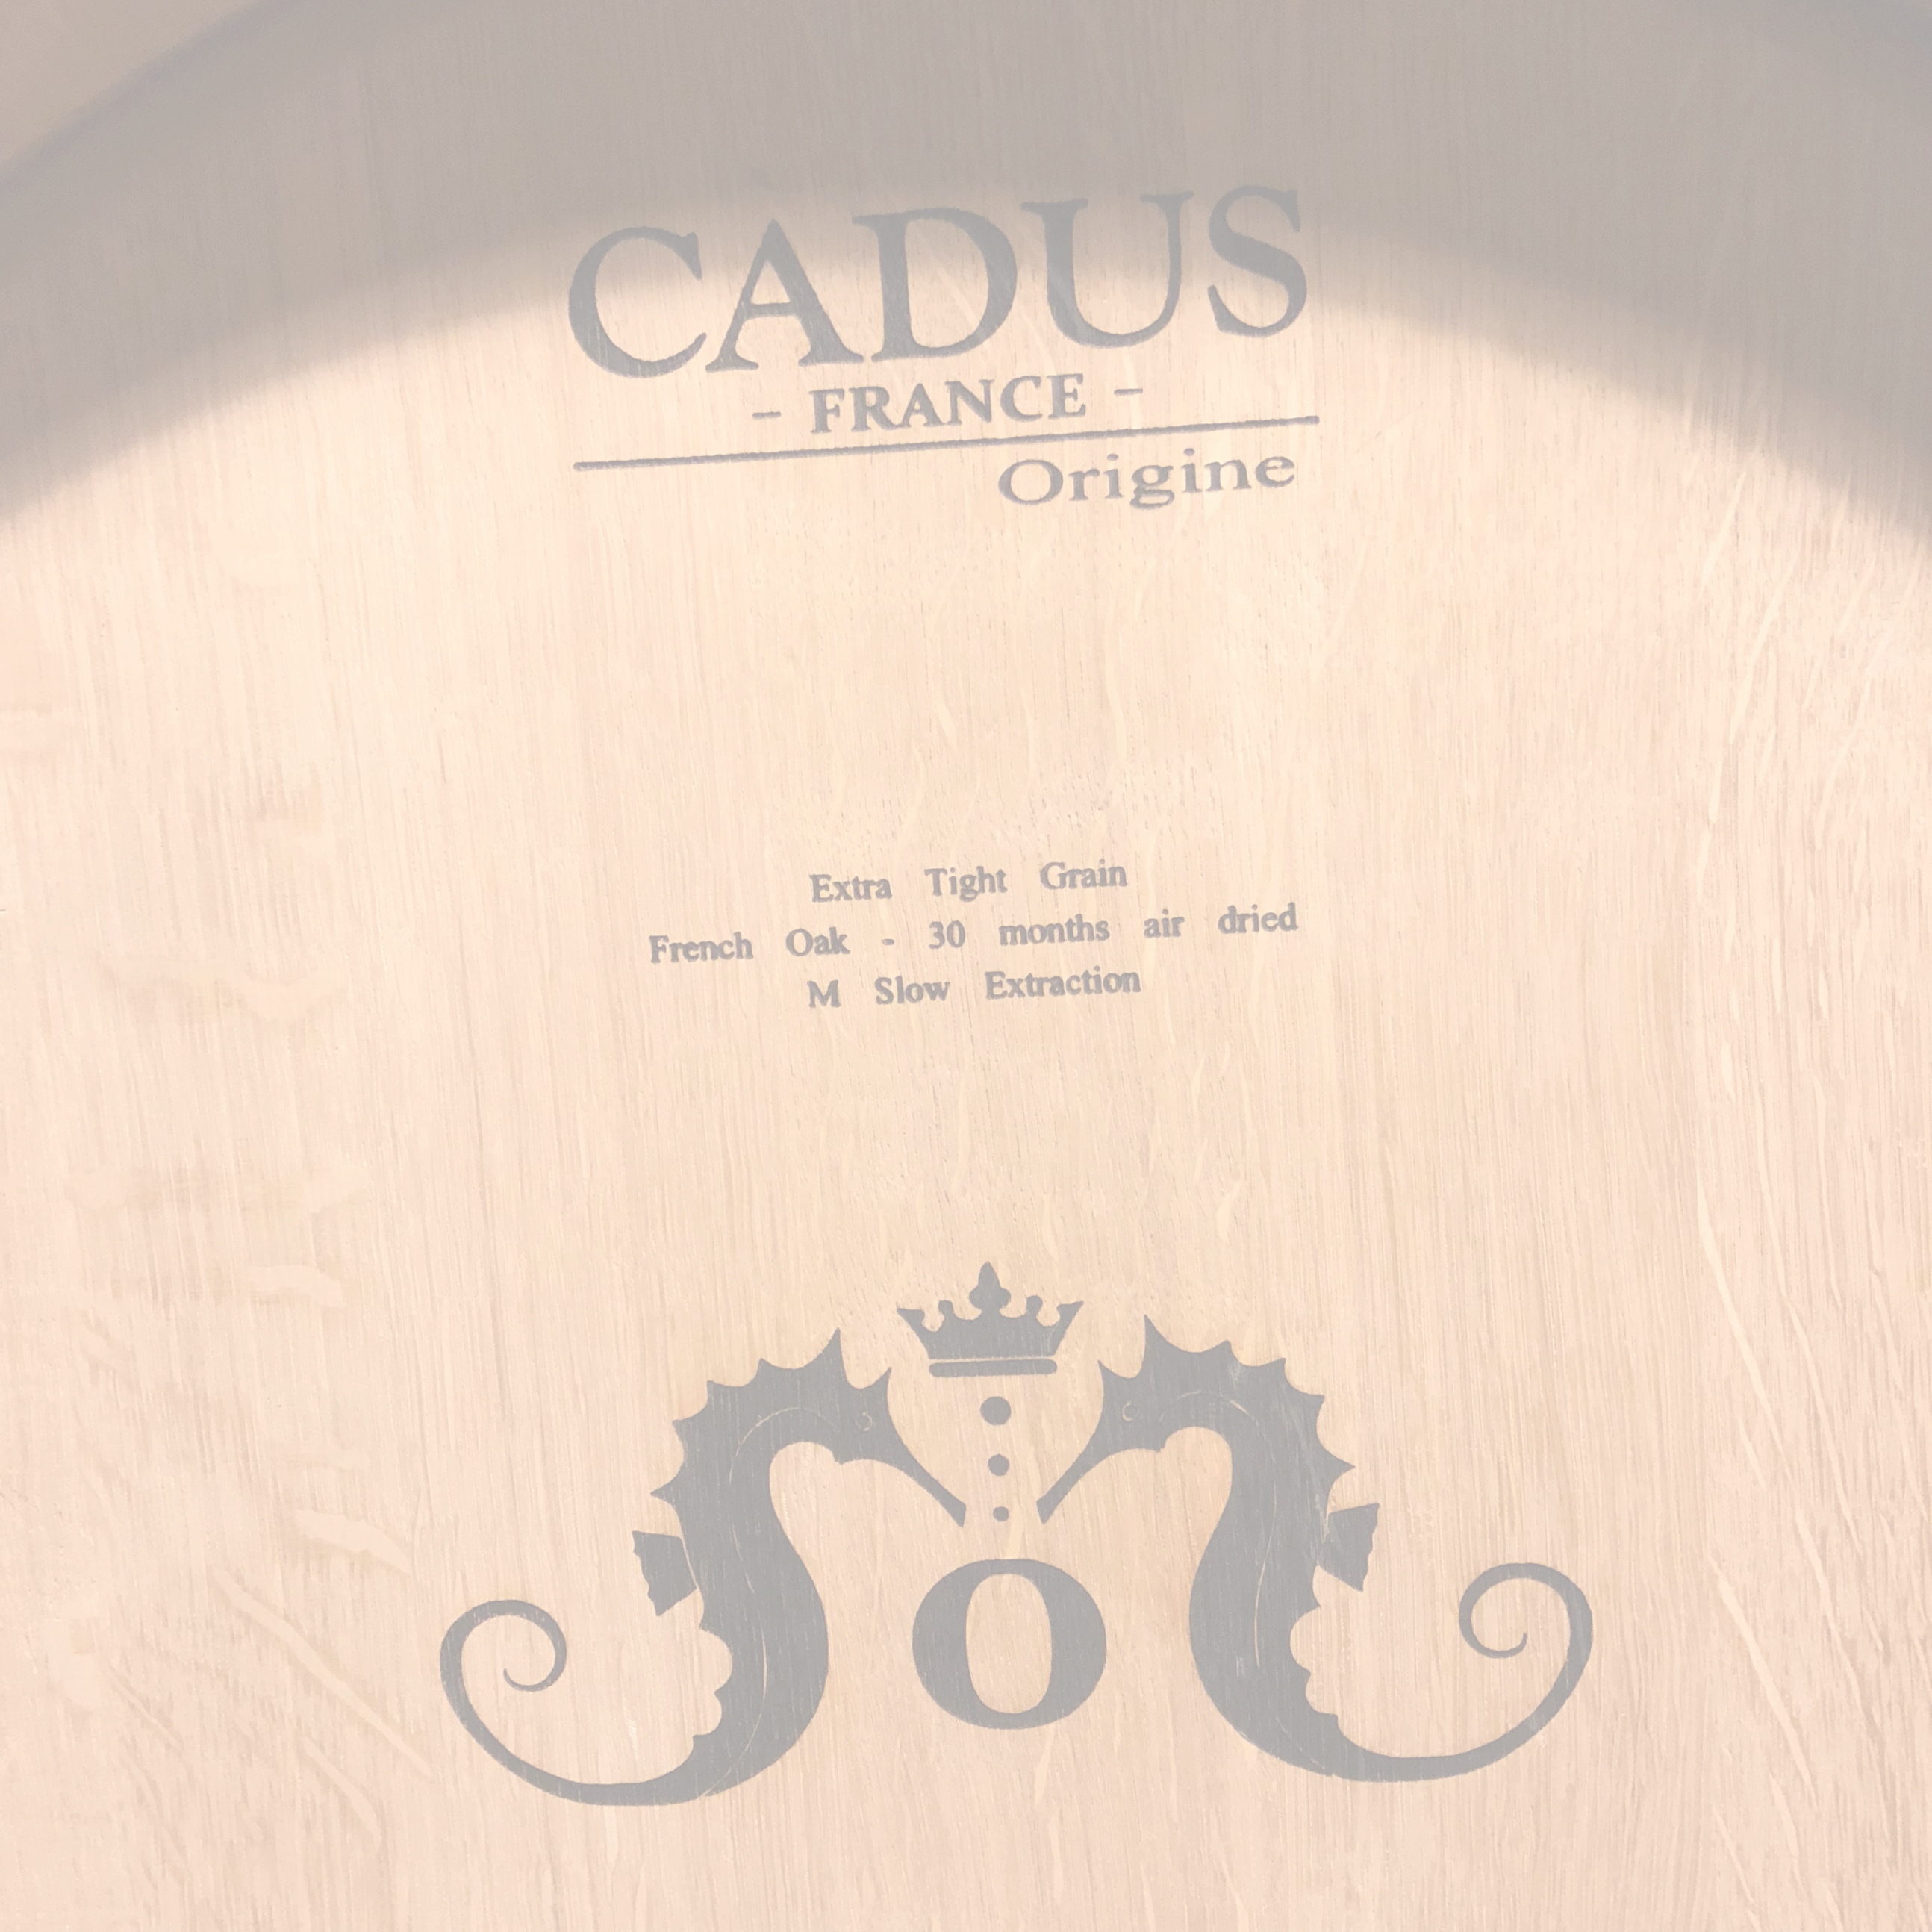 Oceano wine barrel print